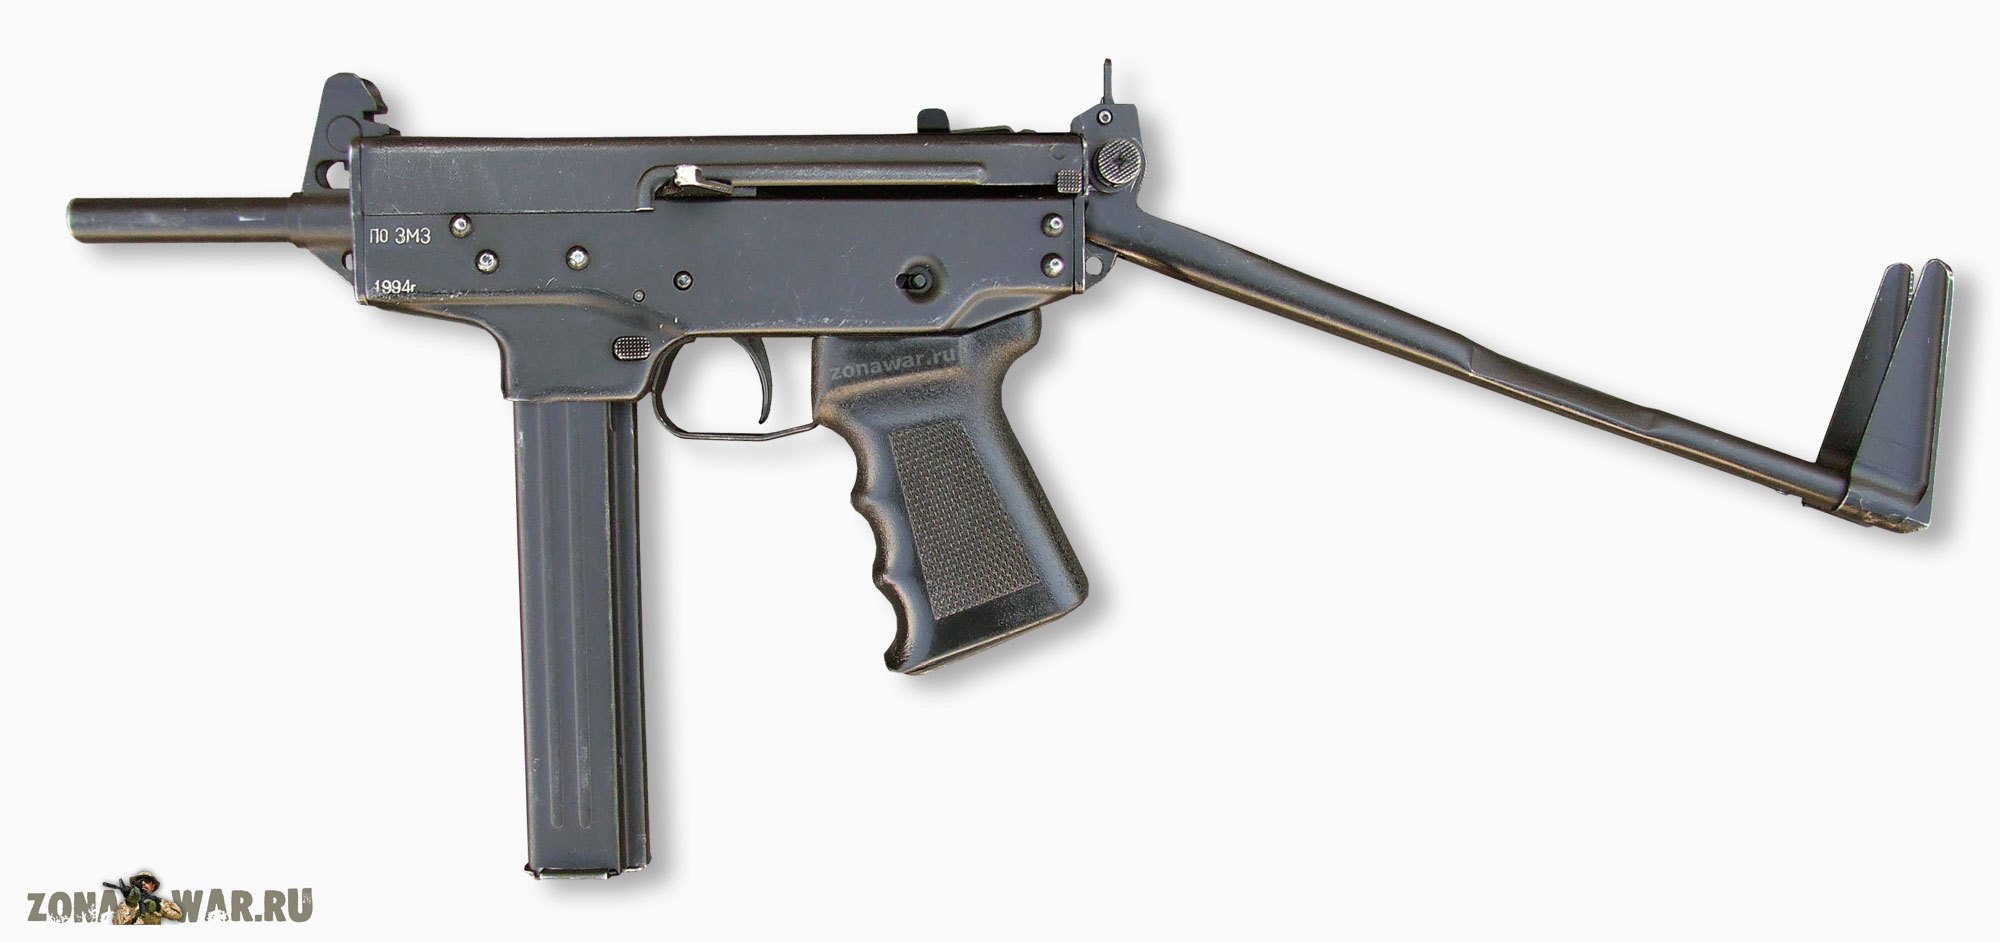 PP - 9 «Klin» submachine guns